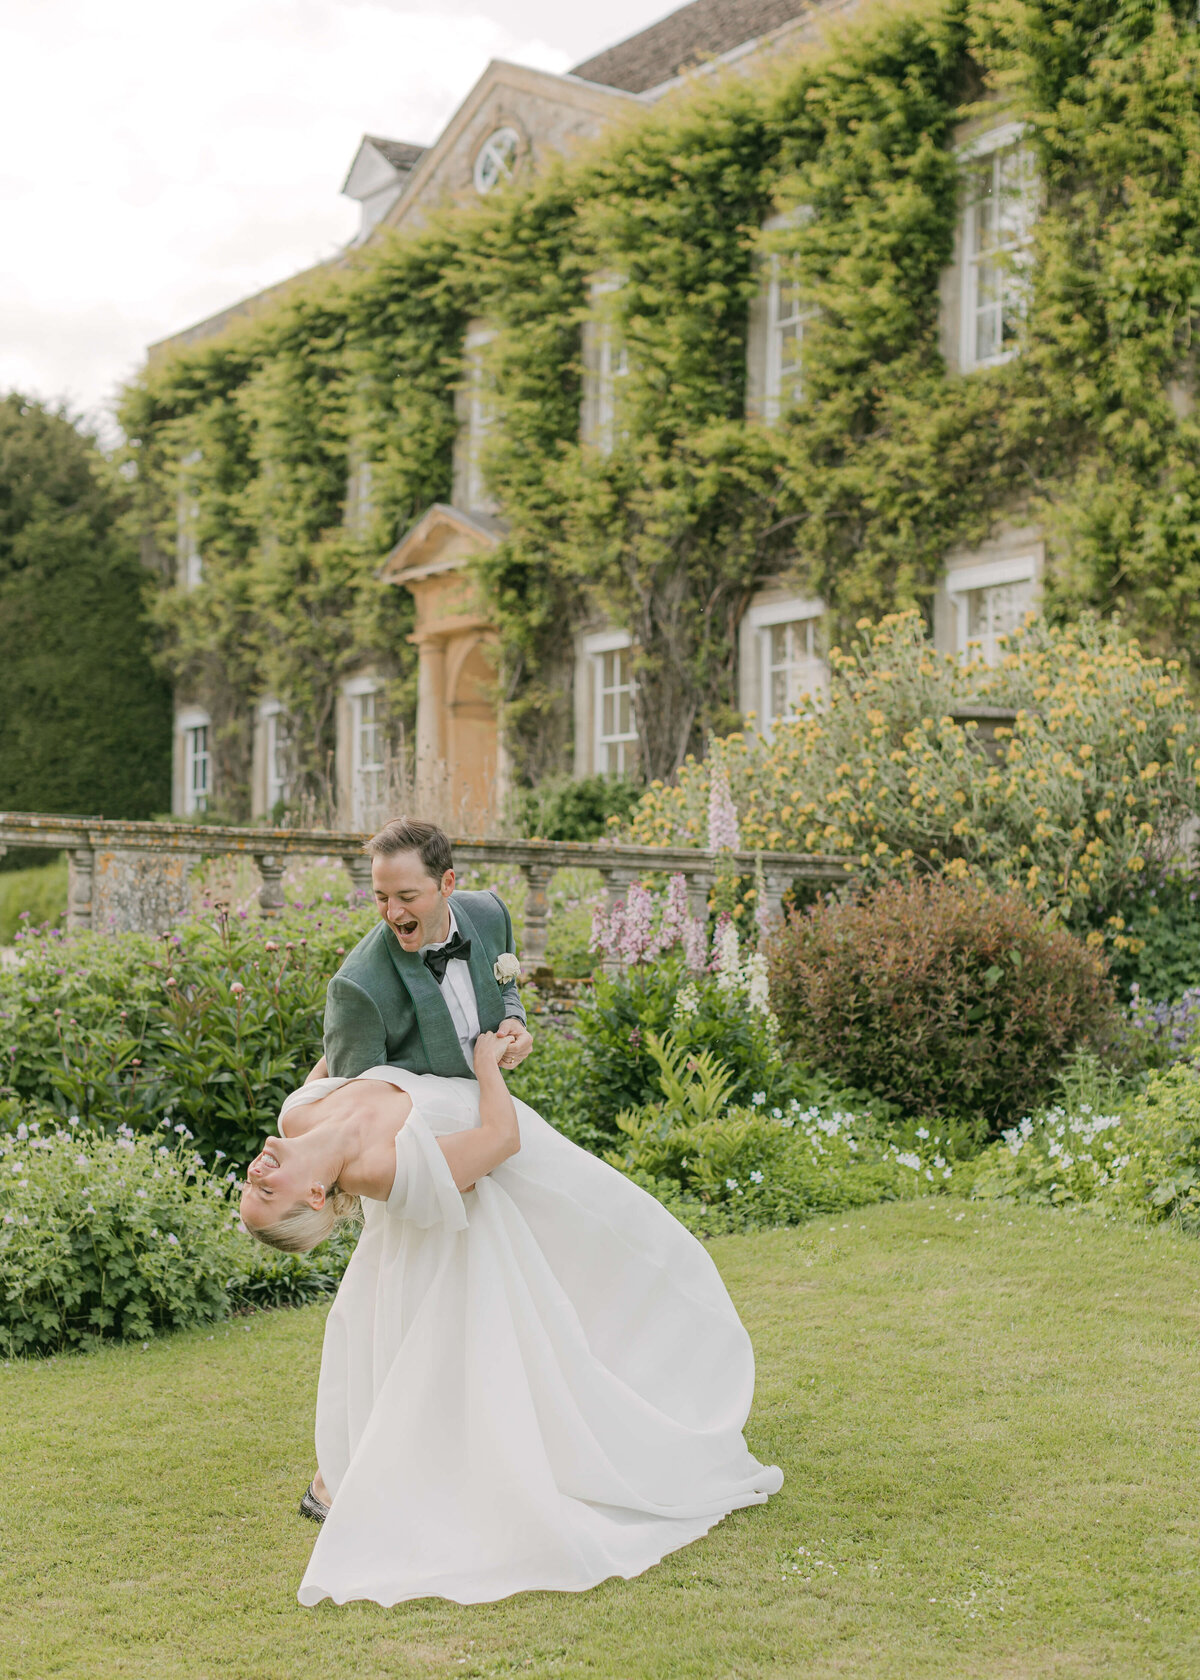 chloe-winstanley-weddings-cotswolds-cornwell-manor-monique-lhuillier-bride-groom-dancing